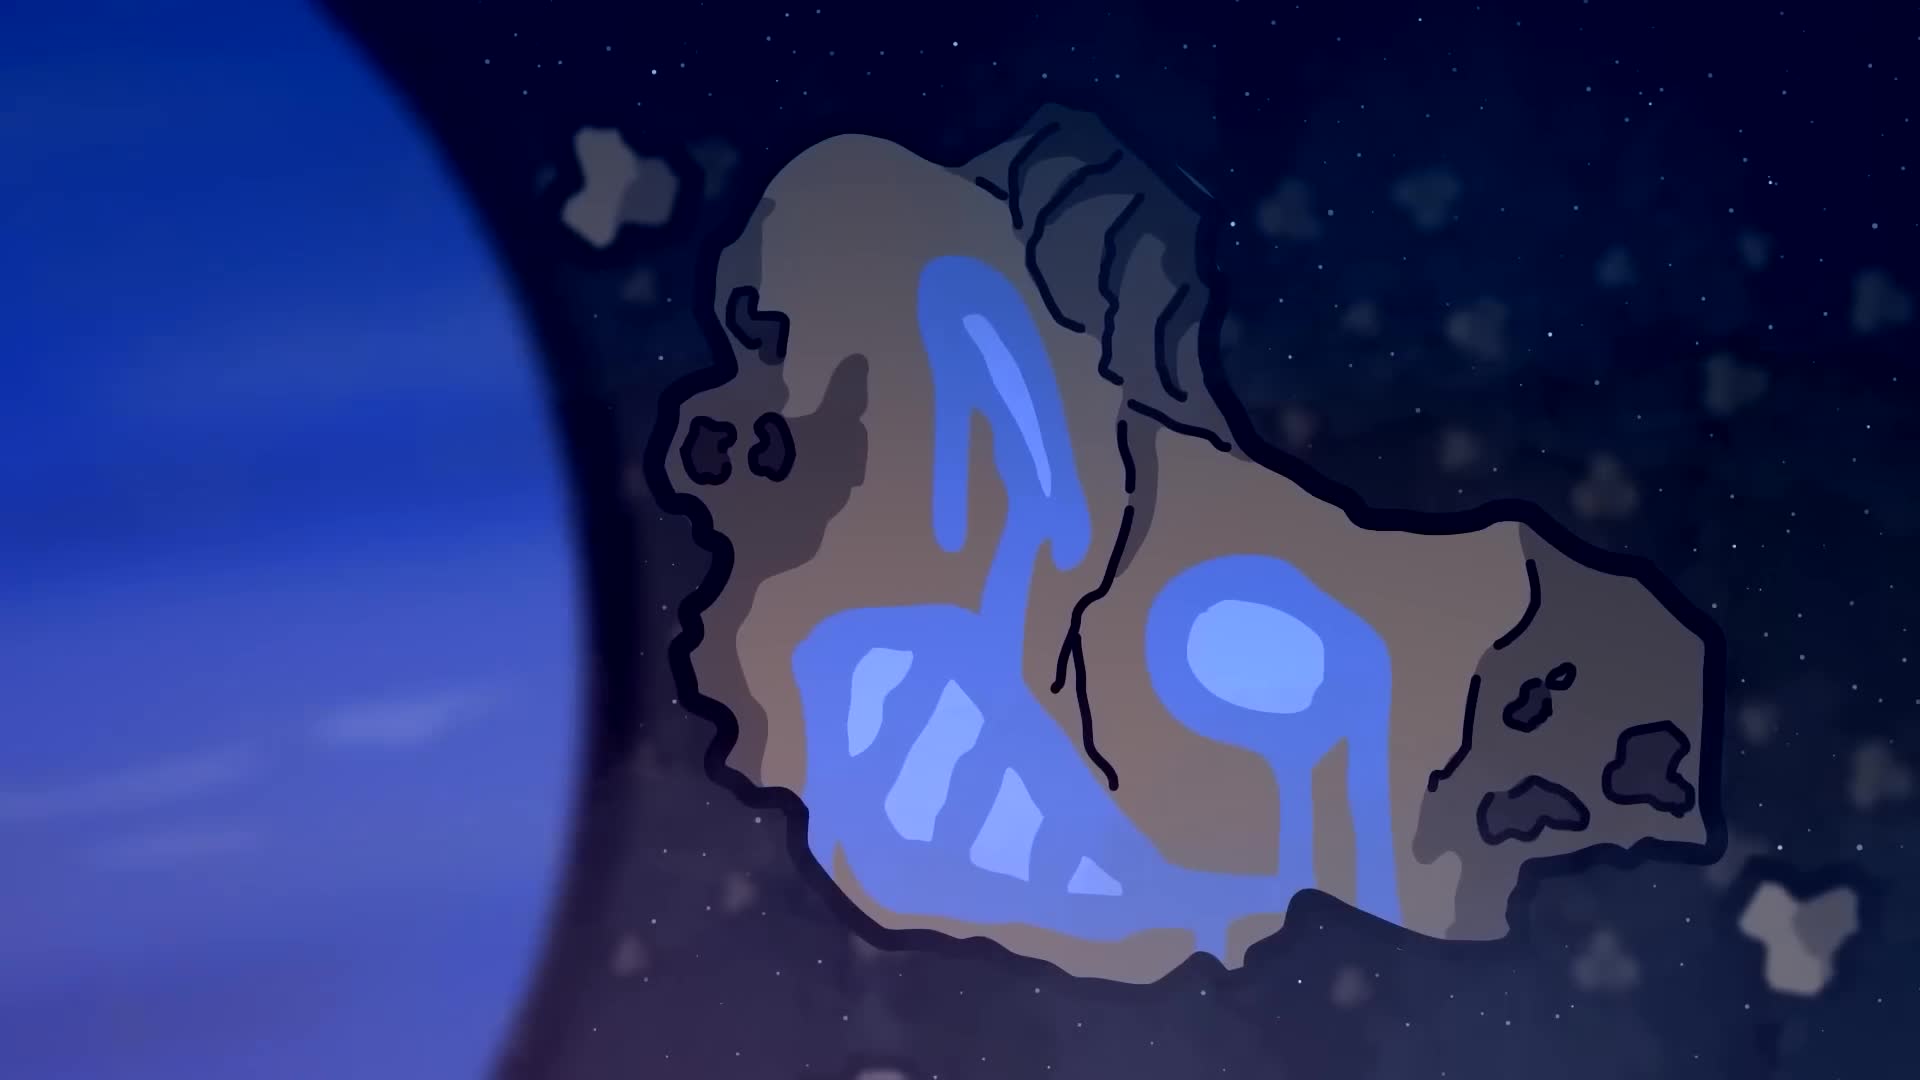 Фанфик шаранутый космос нептун